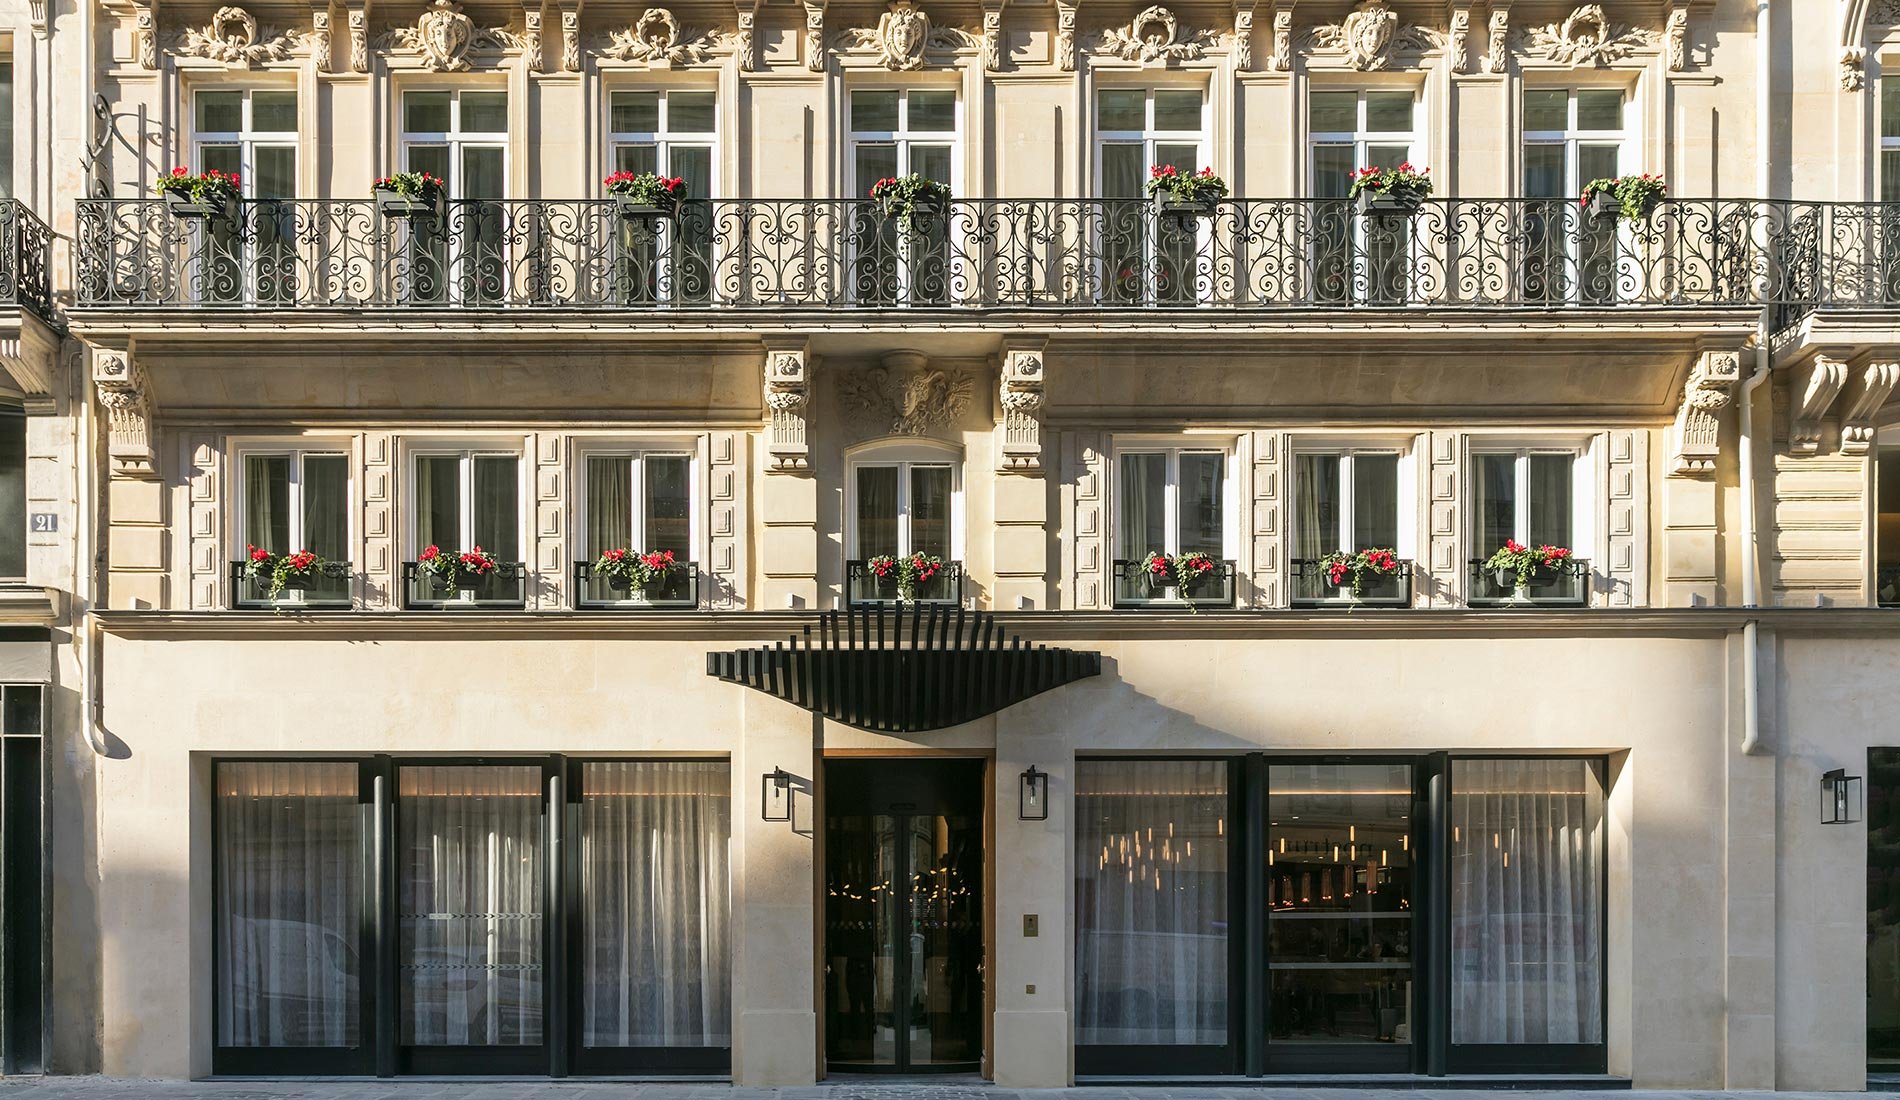 Hôtel de luxe - Maison Albar Hotels Le Pont-Neuf - 5 étoiles - façade